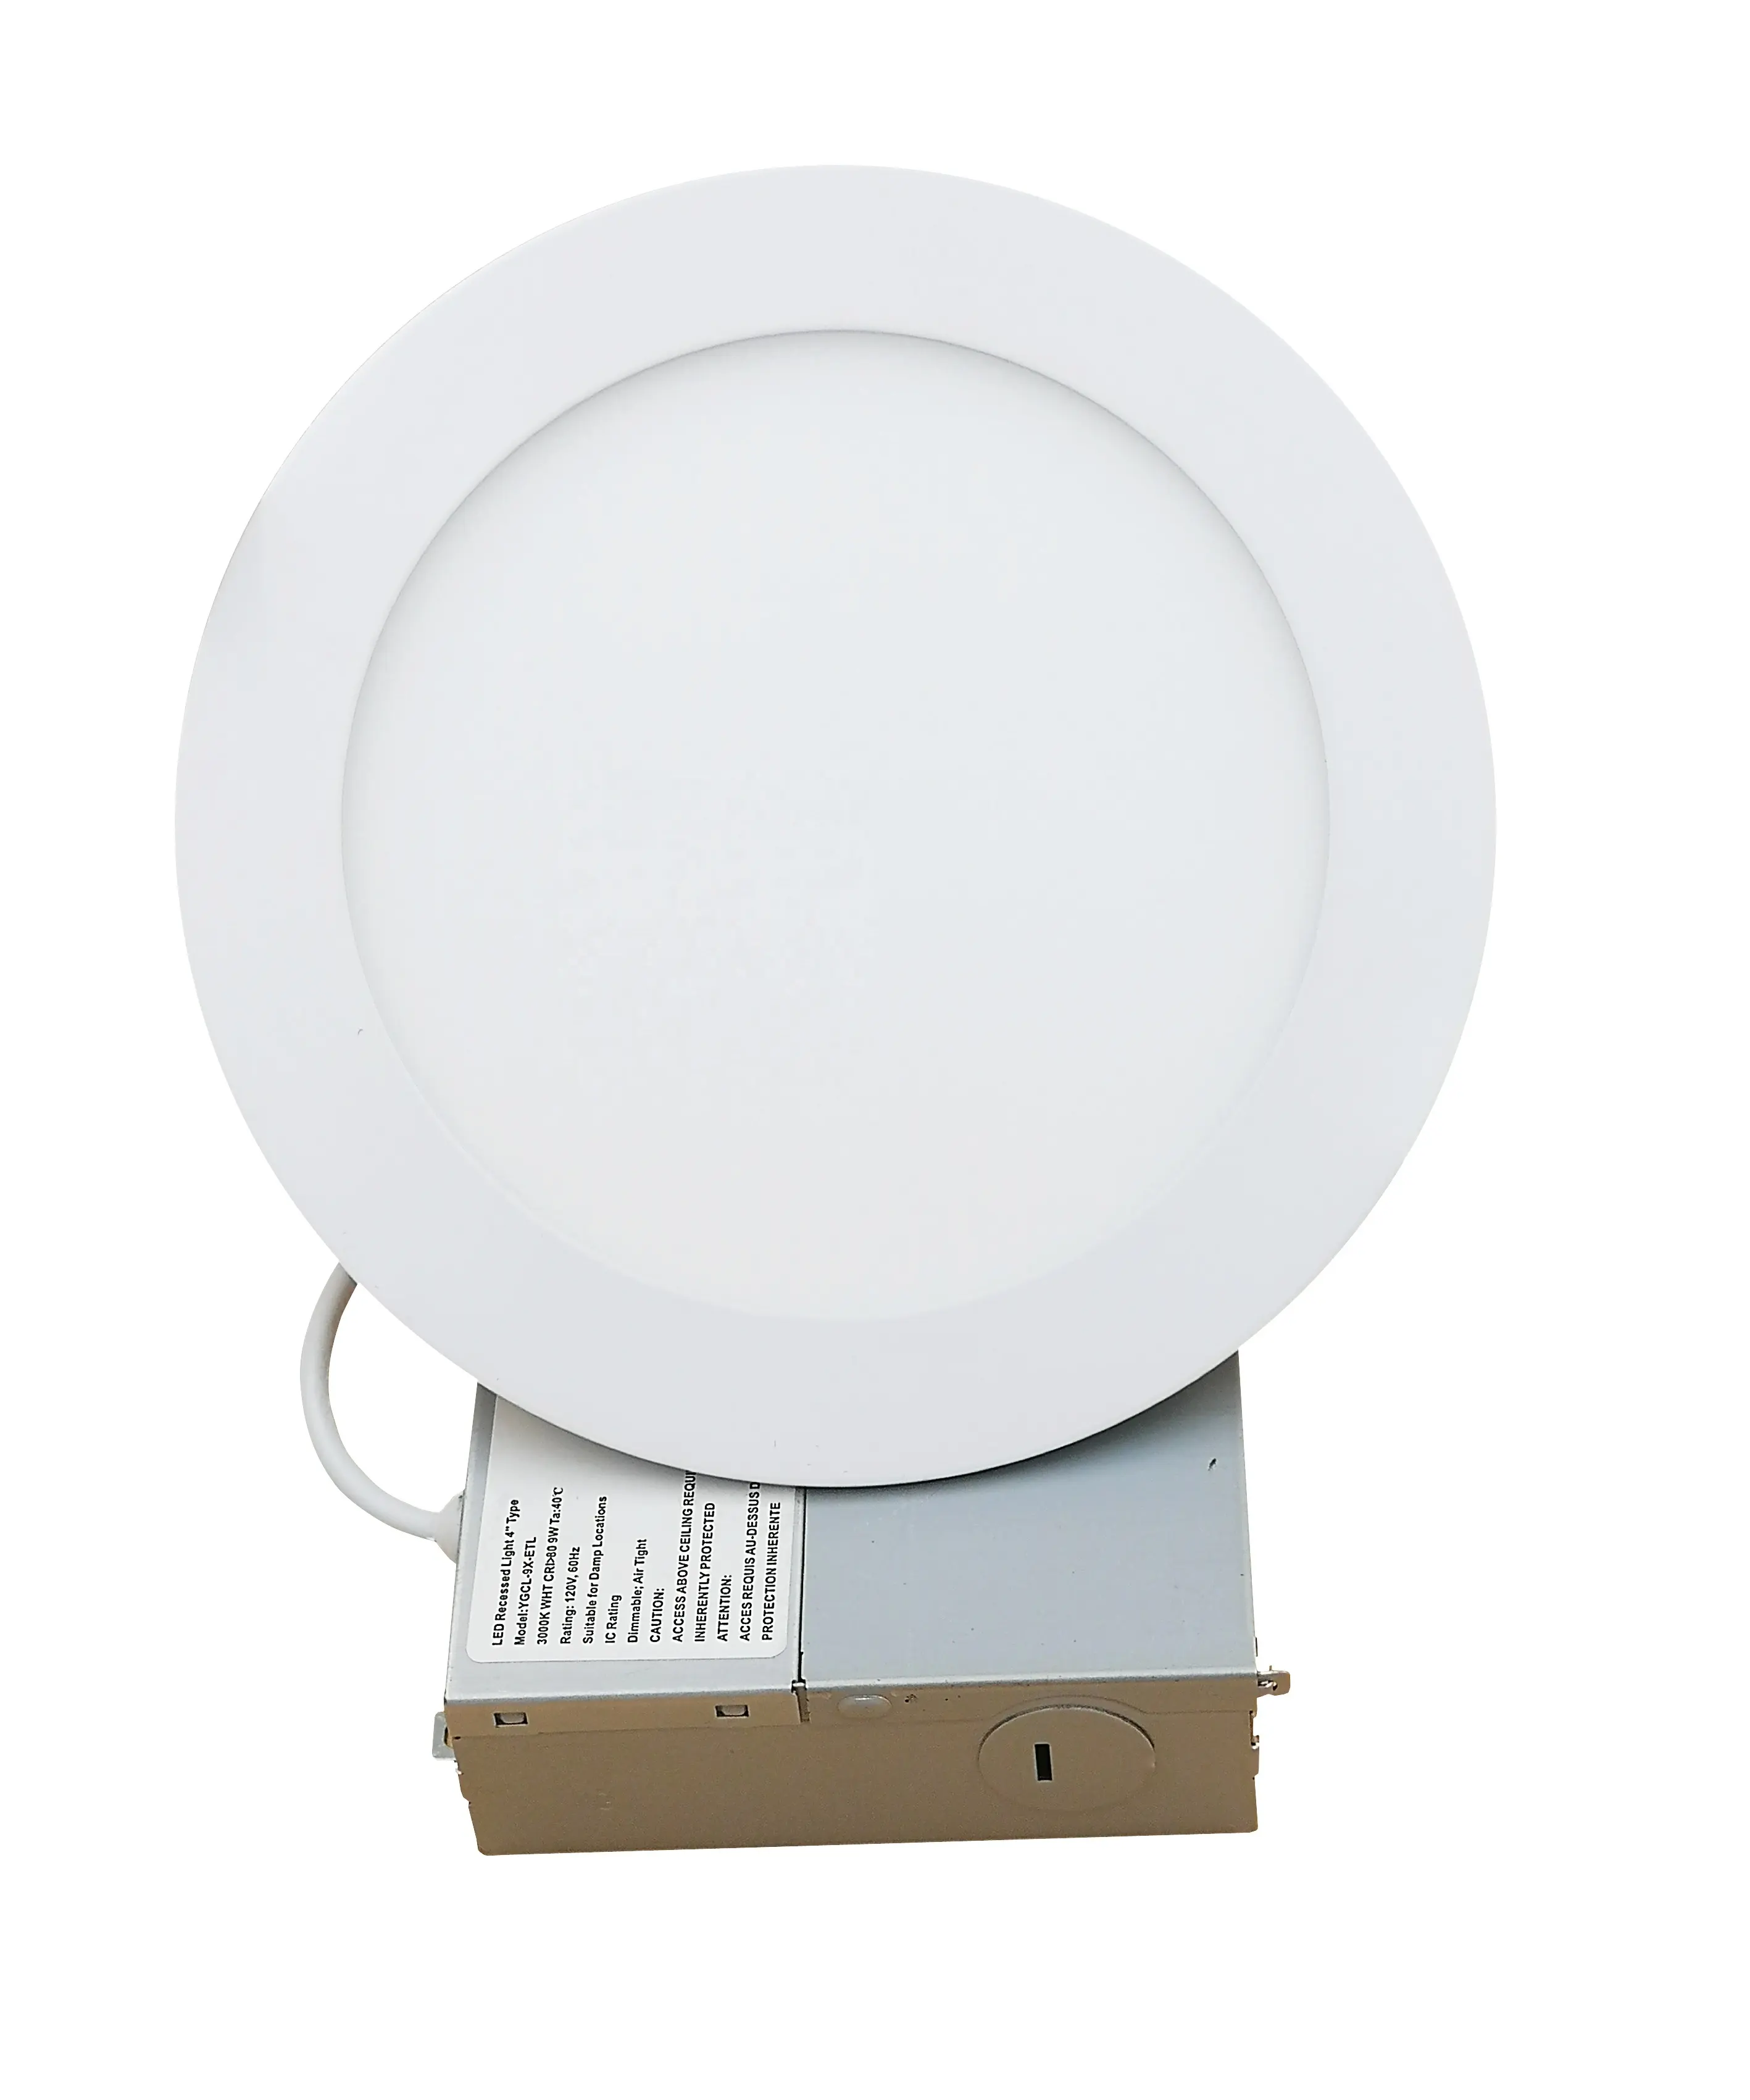 Modernes LED-Ultra-Shone-Gehäuse für Innenräume IP54 Zylinder mit hoher Helligkeit Weiß 1300lm Aluminium-LED-Scheibe Einbau leuchte für Cei